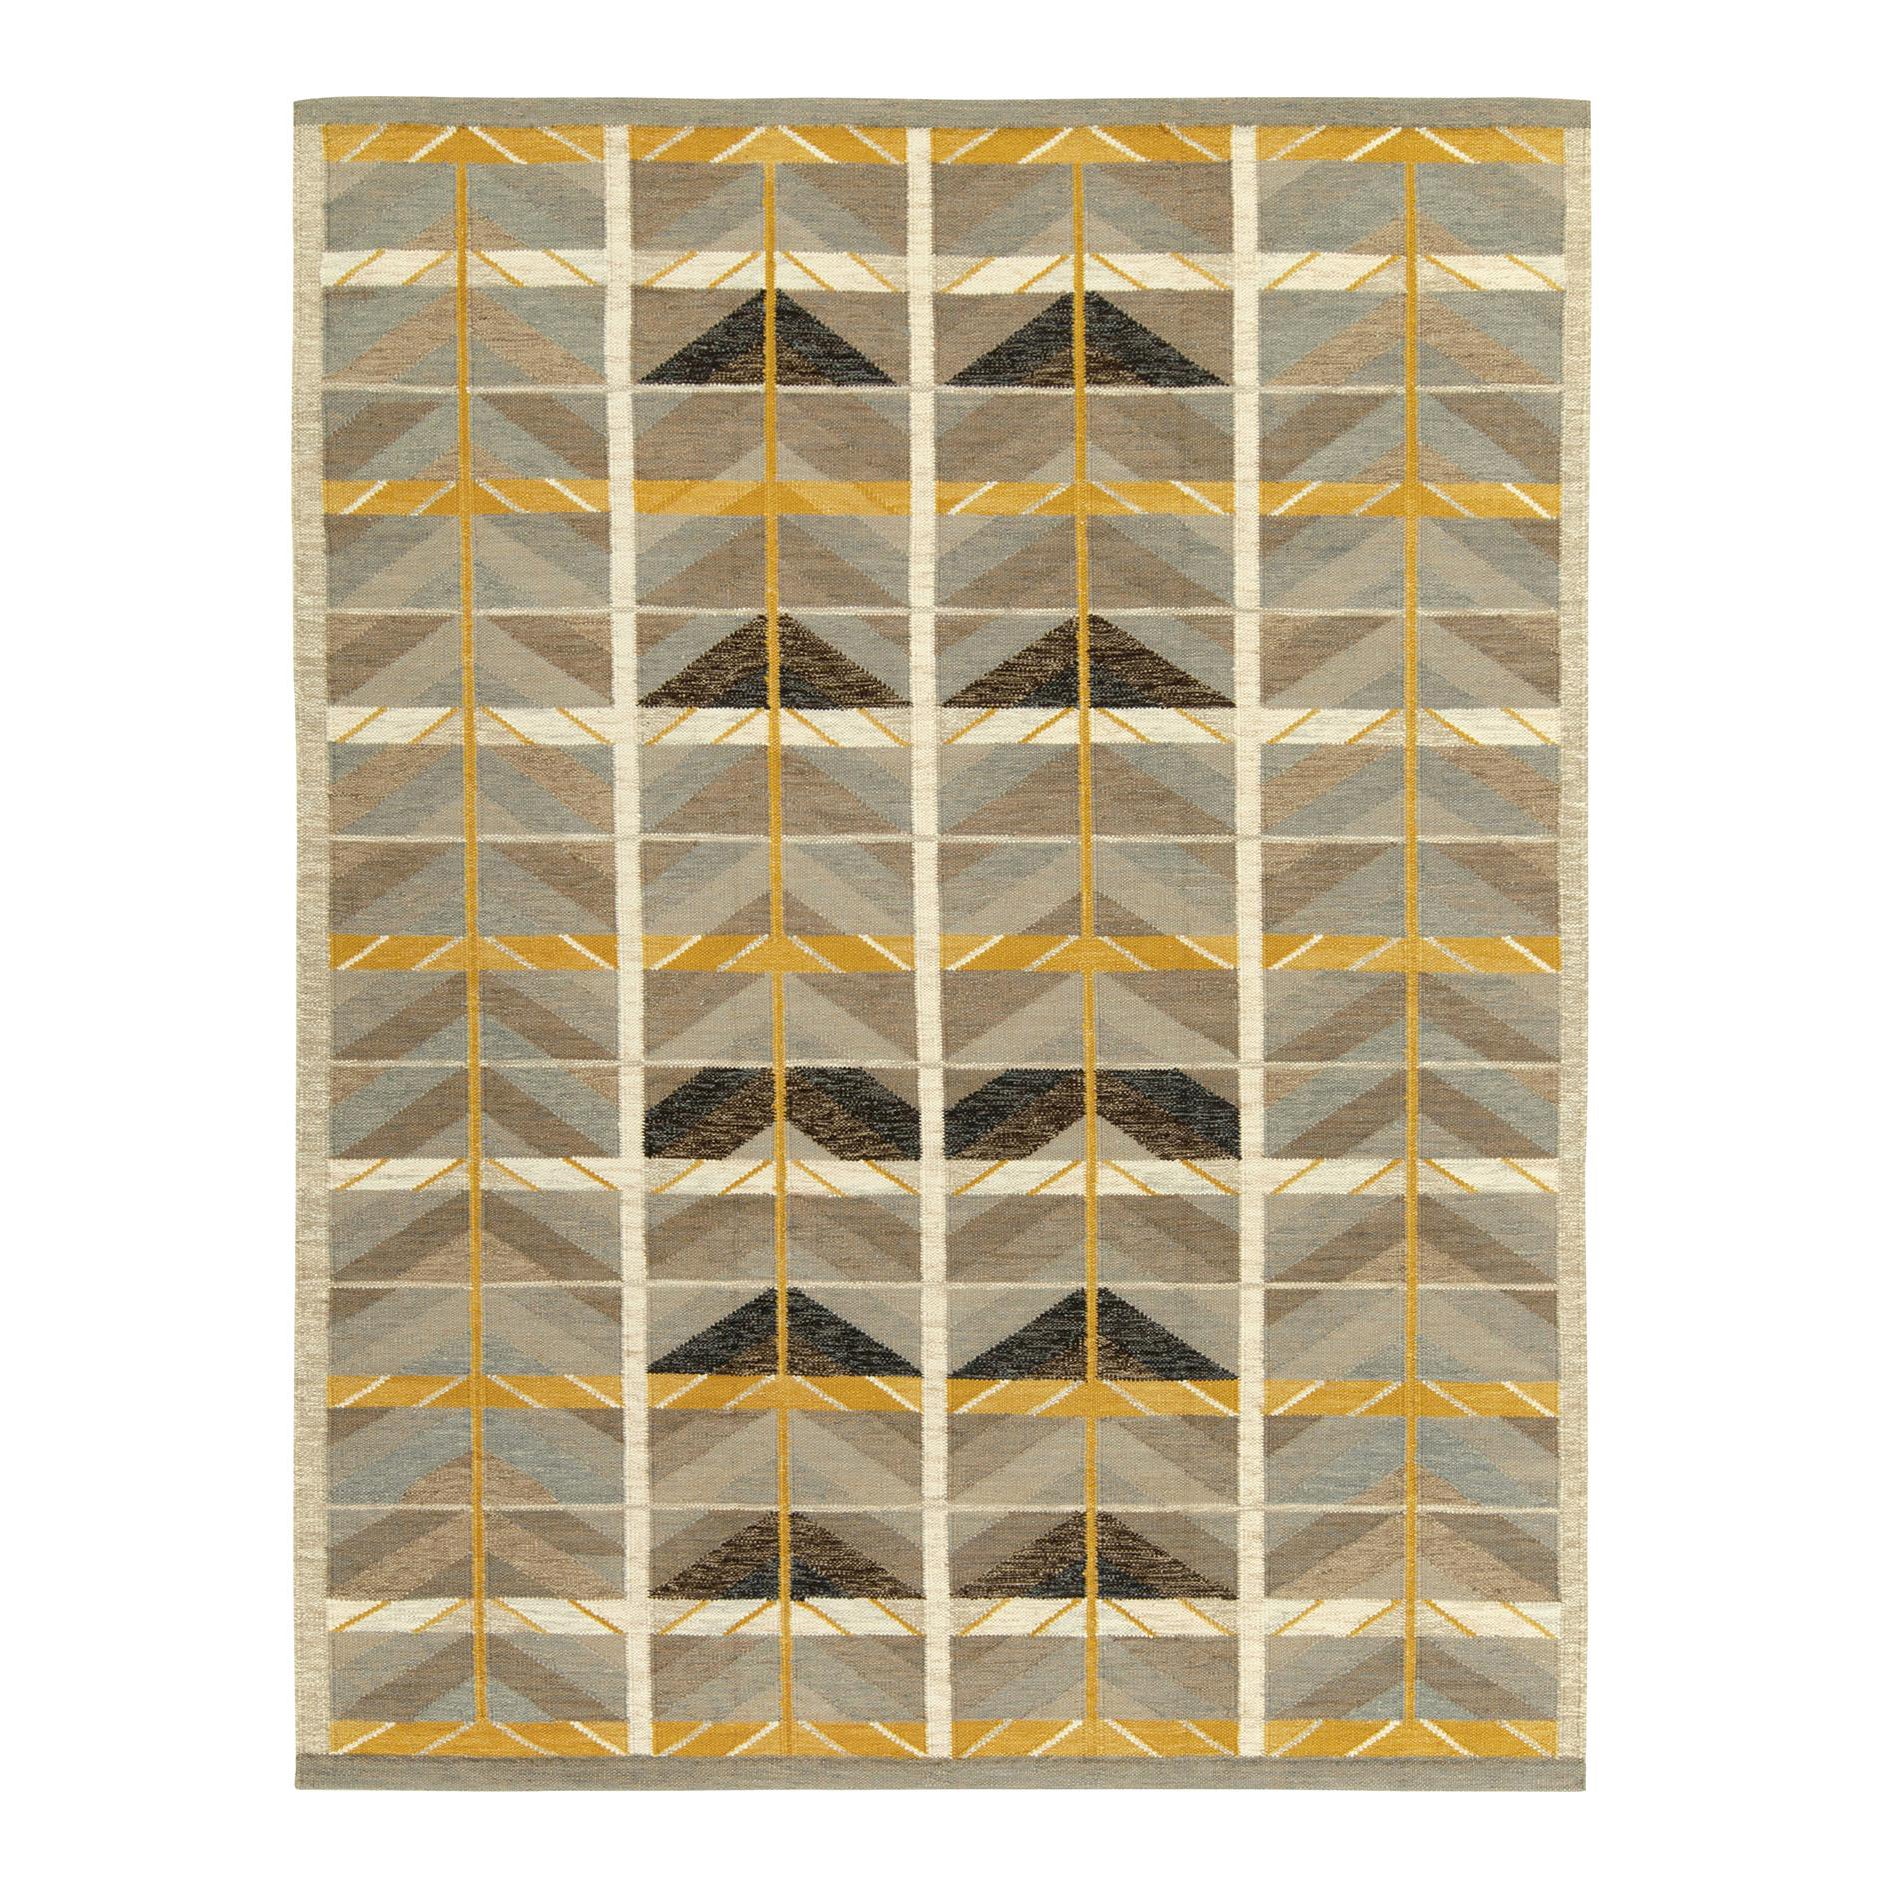 Tapis et Kilim de style scandinave sur mesure à motif géométrique beige-marron